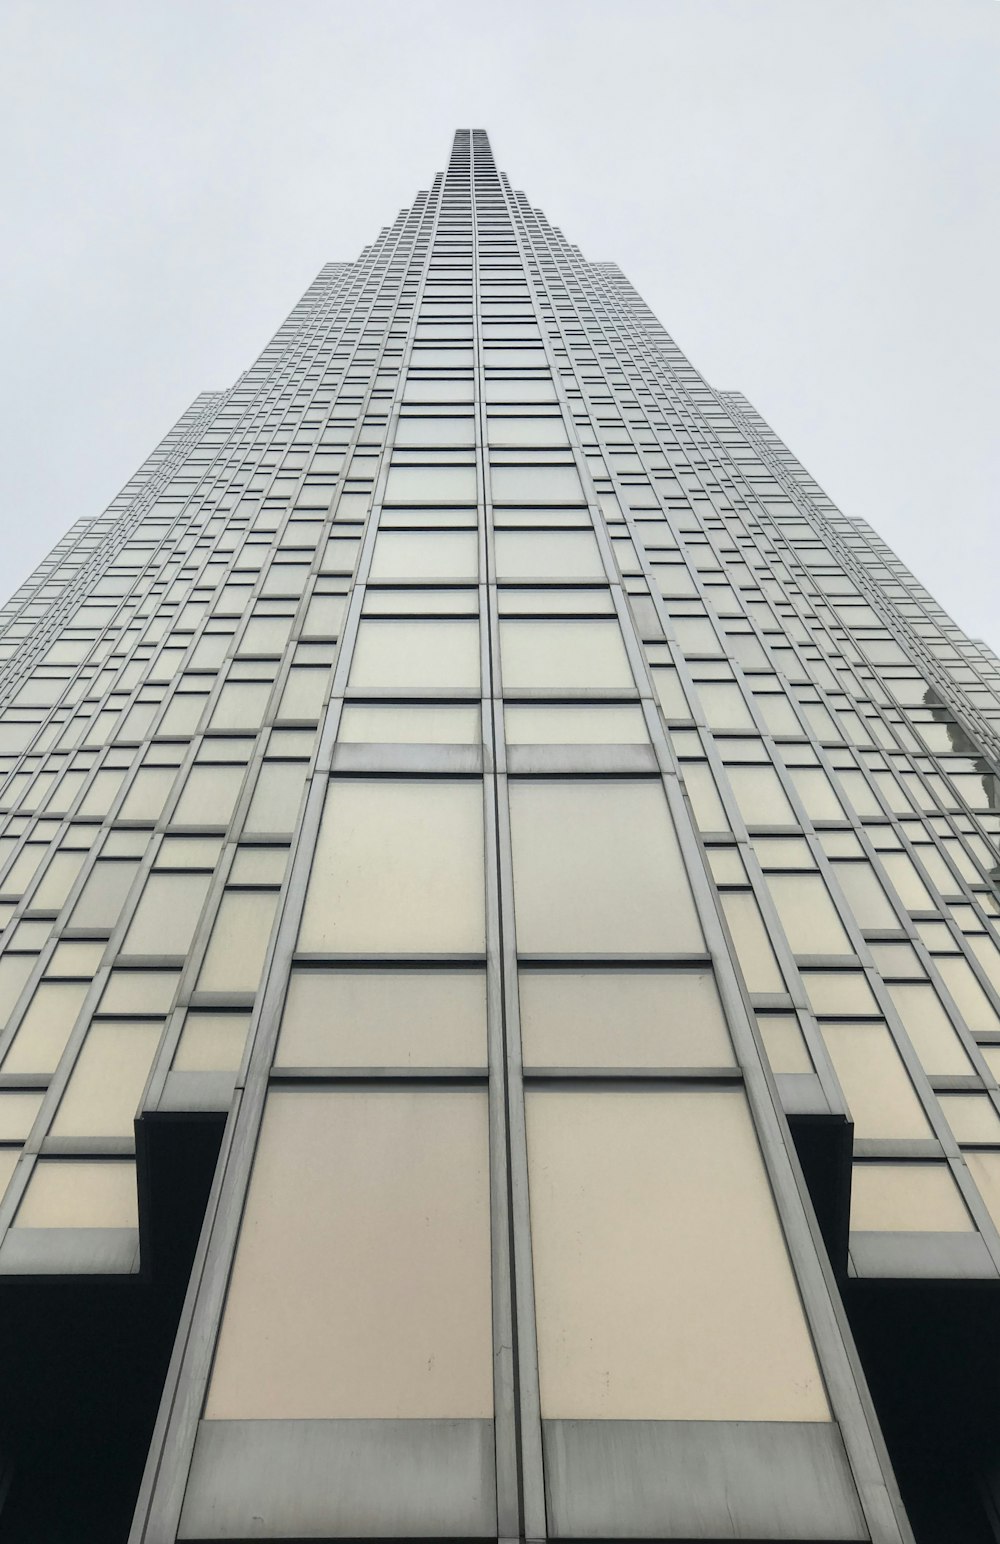 Photographie en contre-plongée d’un bâtiment en verre gris